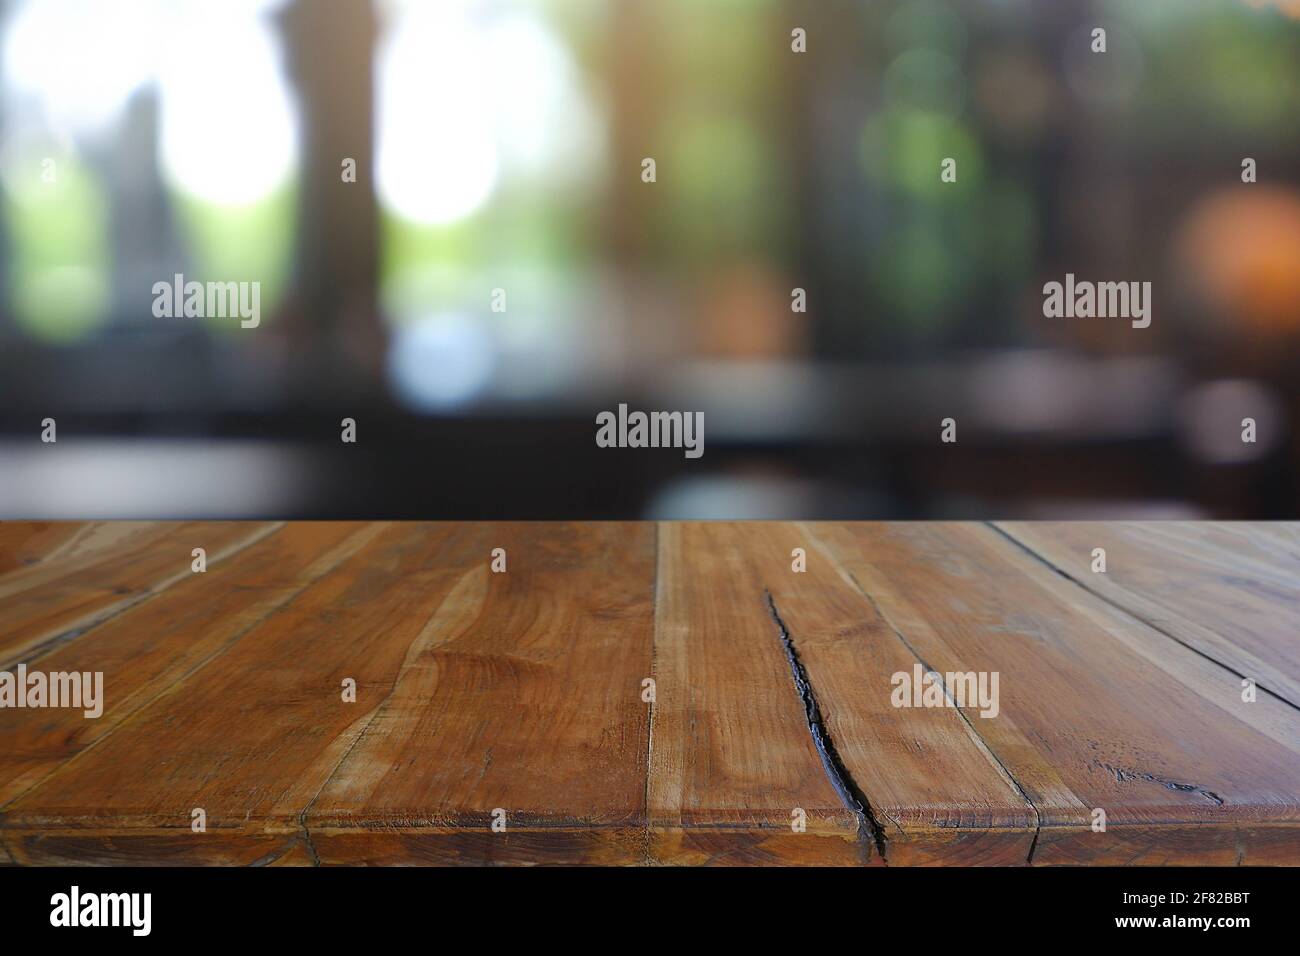 Leerer Holztisch vor dem abstrakten Blurred Cafe, Restaurant in der Nacht. Für die Montage der Produktanzeige oder für das Design eines visuellen Layouts - Bild Stockfoto